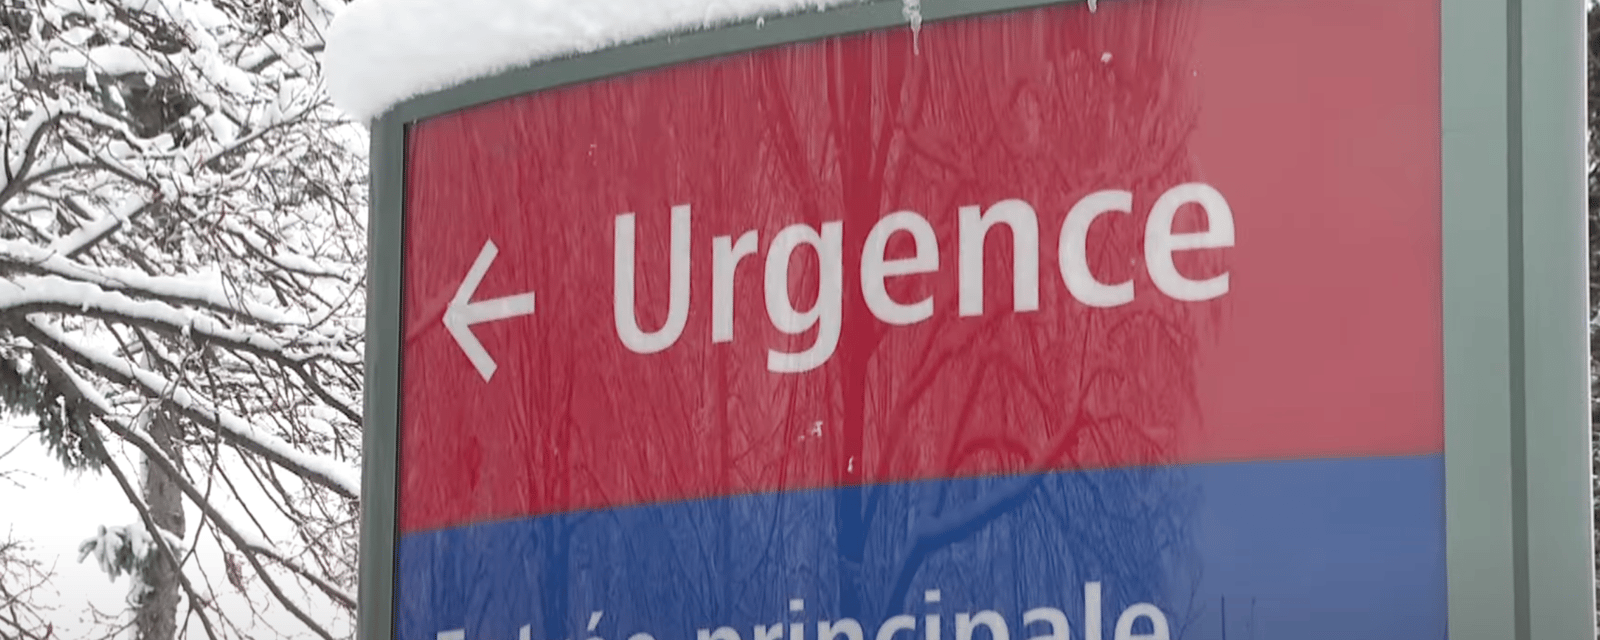 Deux patients meurent dans la salle d'attente de l'urgence de l'hôpital Anna-Laberge